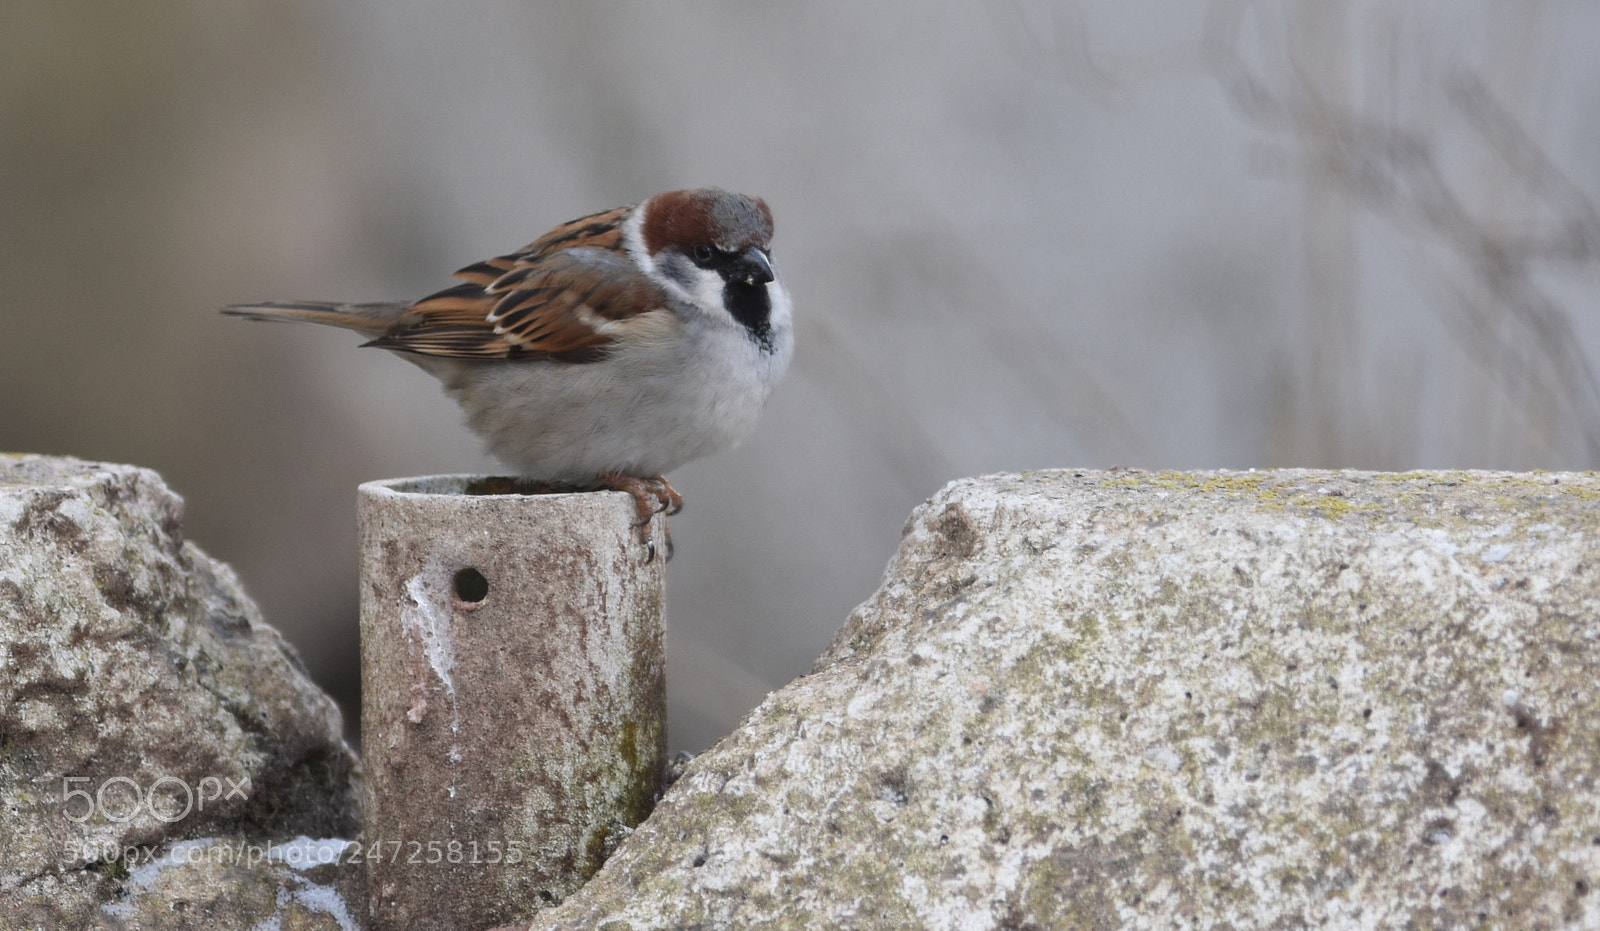 Nikon D7200 sample photo. House sparrow/forest sparrow photography